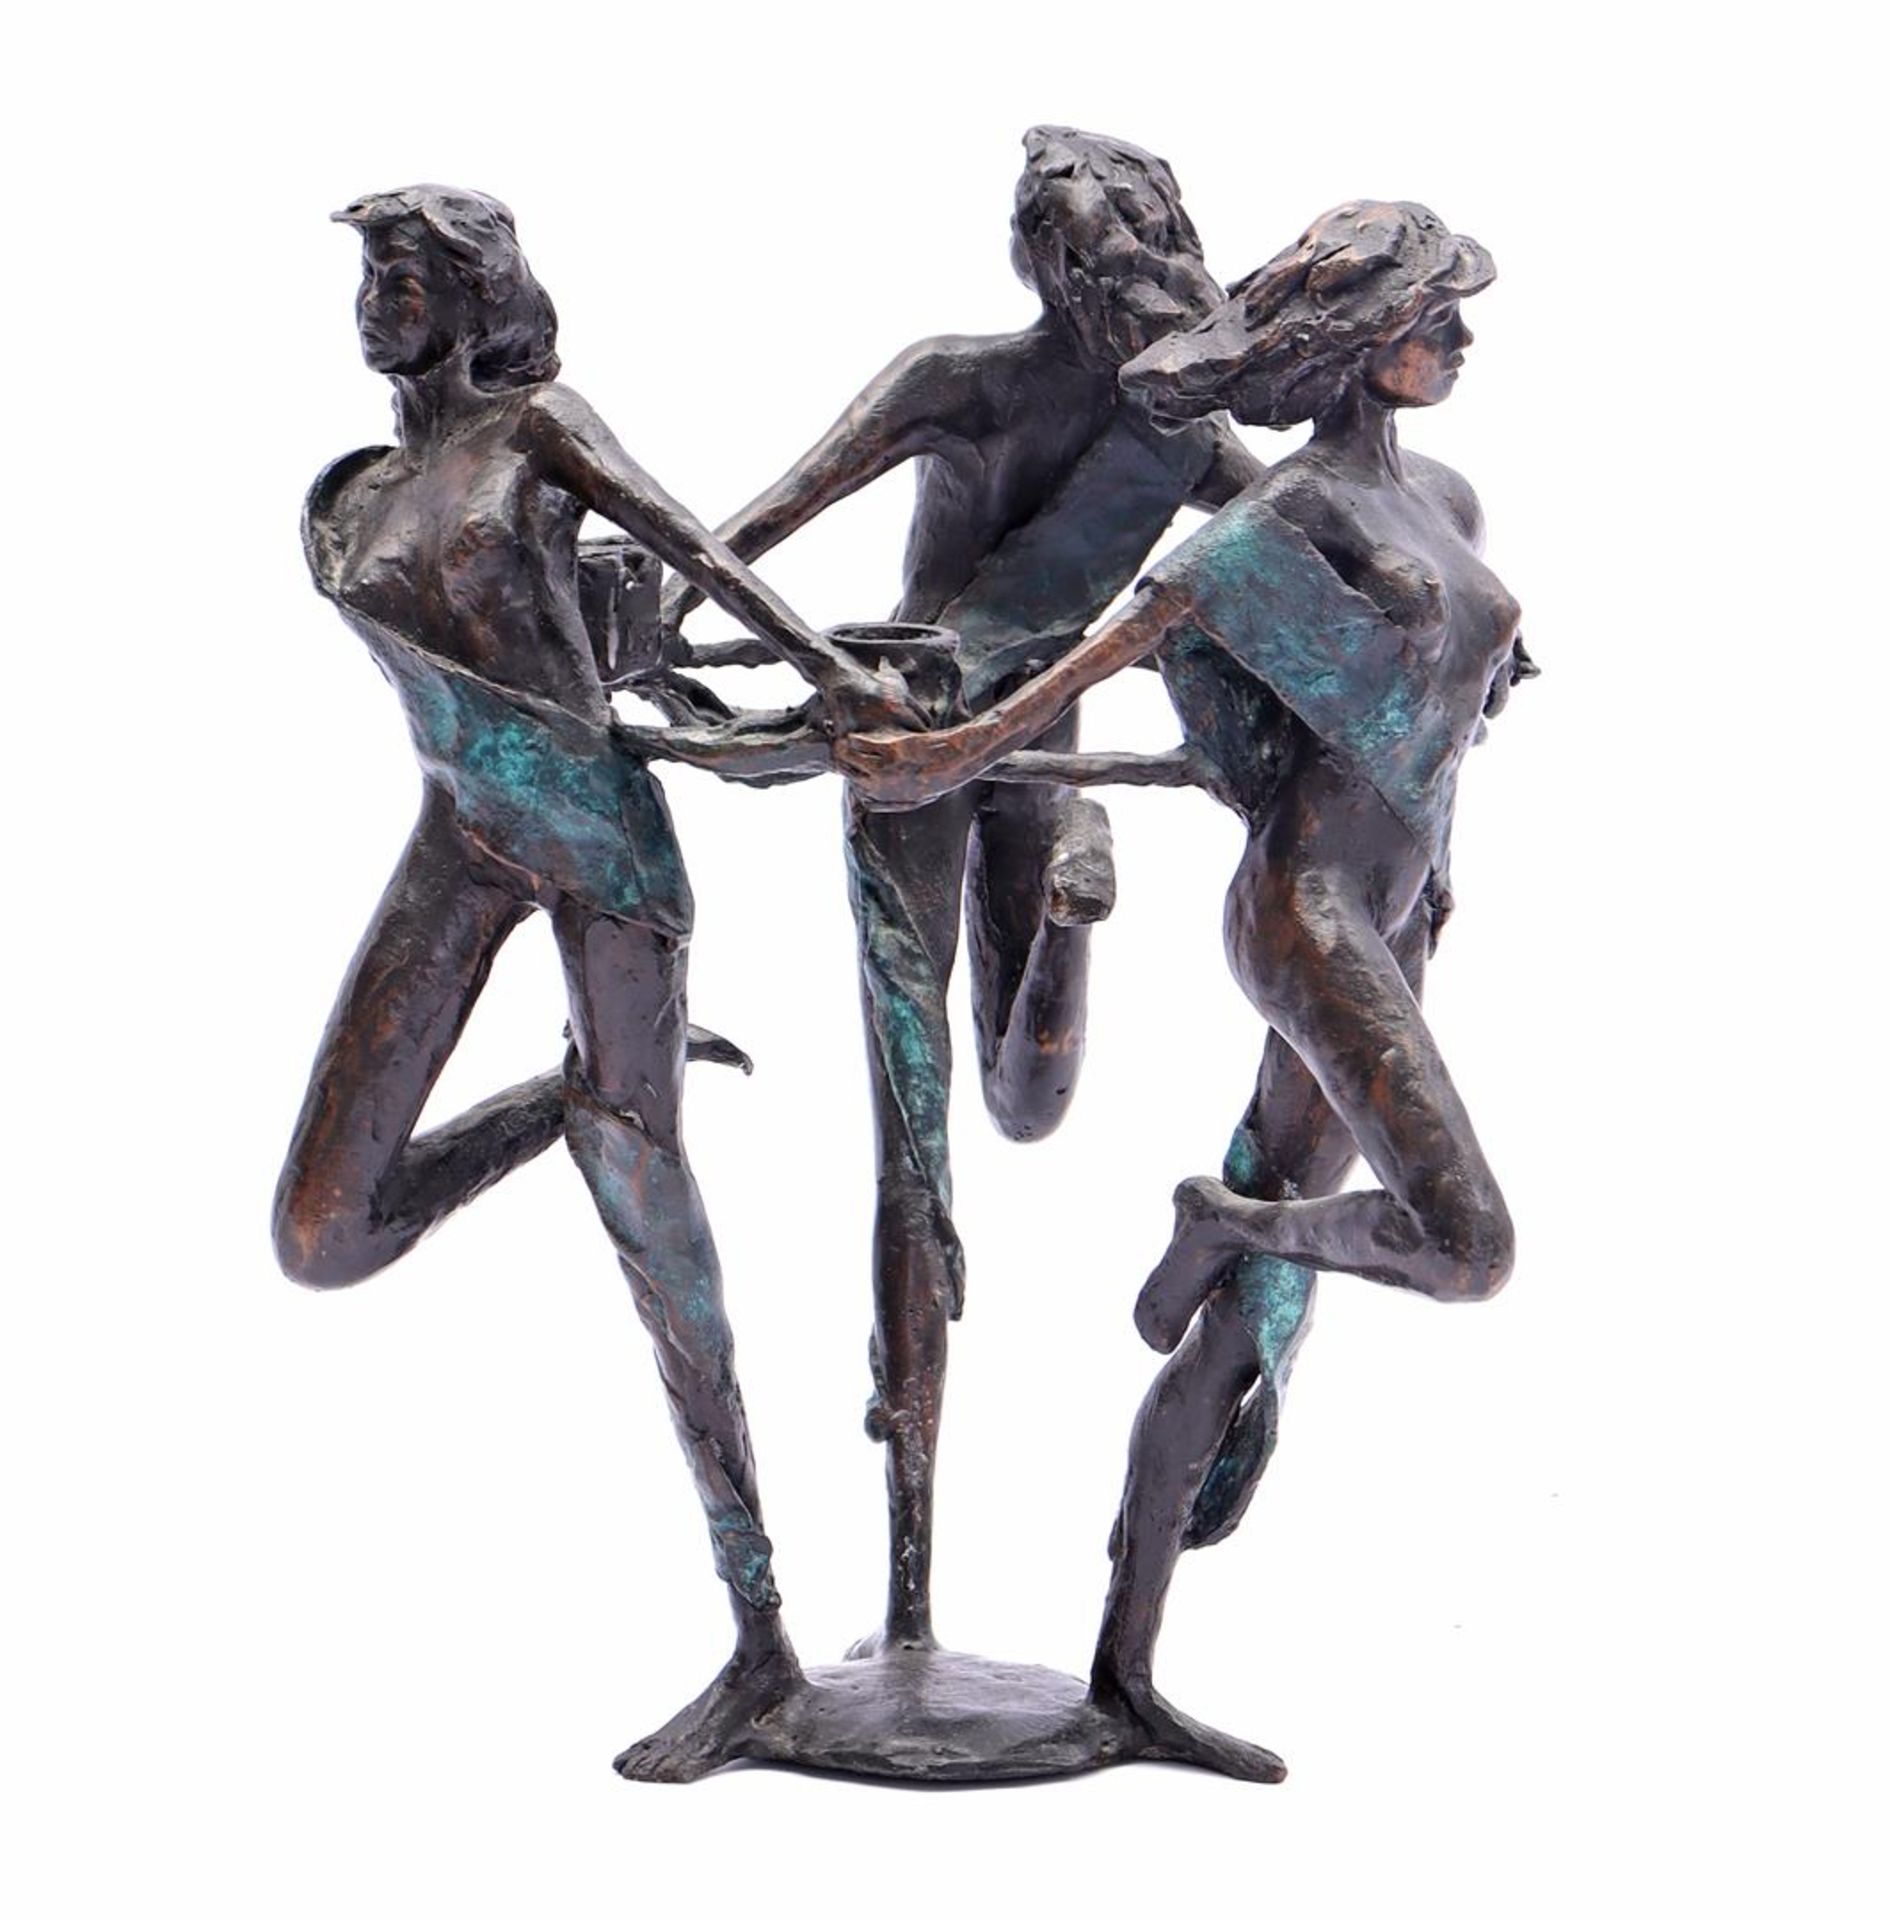 3 dancing figures candelstick